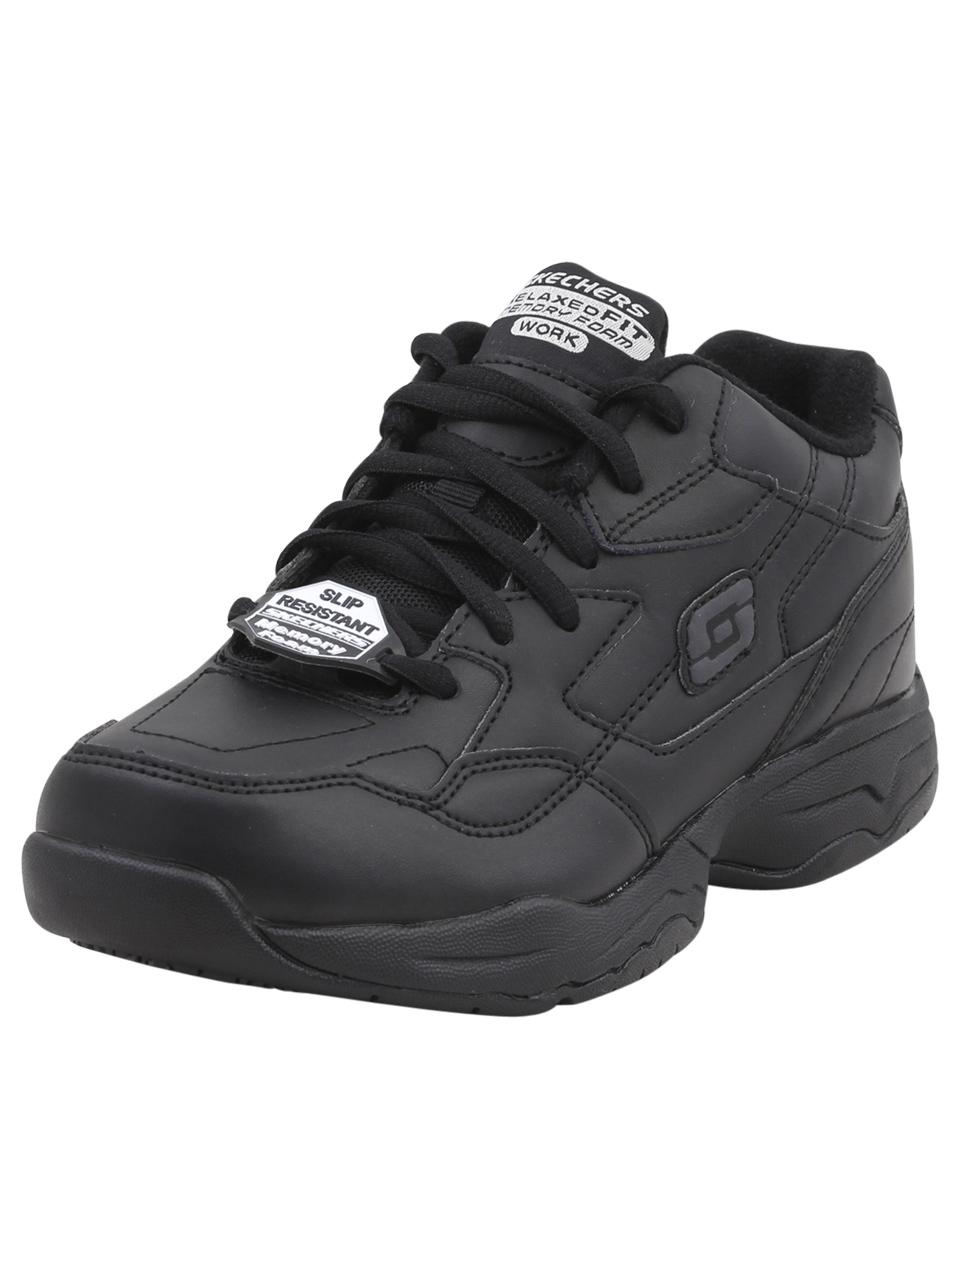 Skechers Work Women's Felton Albie Memory Foam Slip Resistant Sneakers Shoes - Black - 7.5 B(M) US